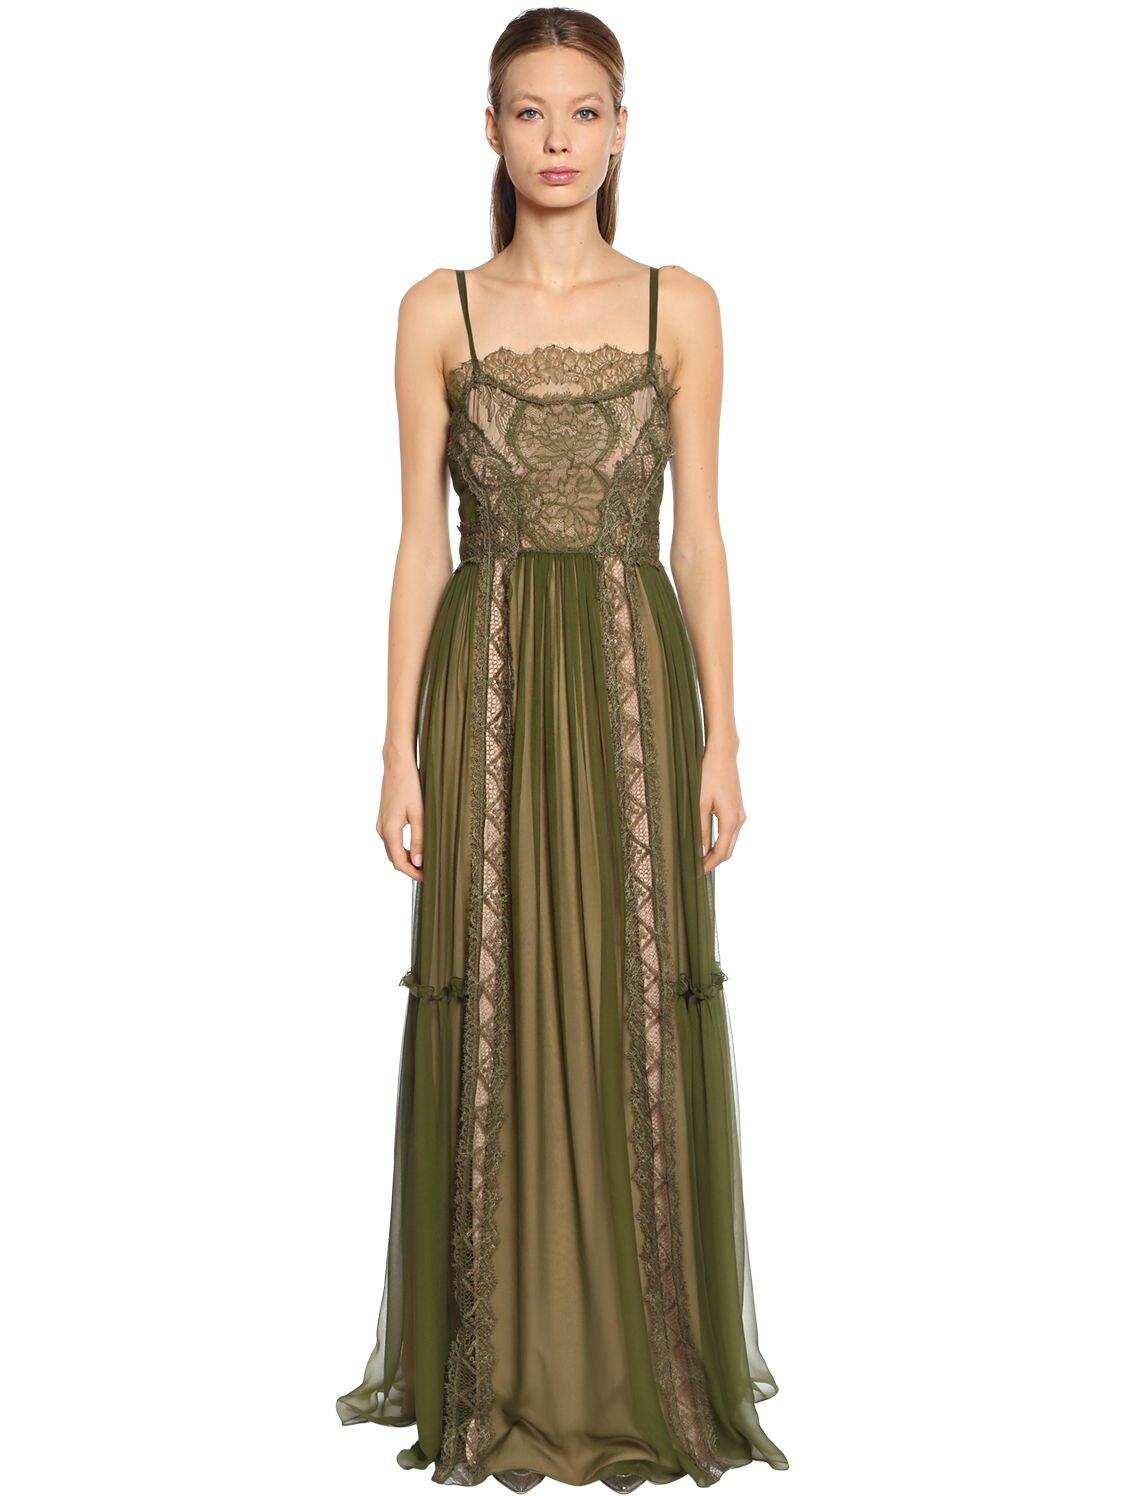 Alberta Ferretti Silk Chiffon & Lace Gown in Green - Lyst